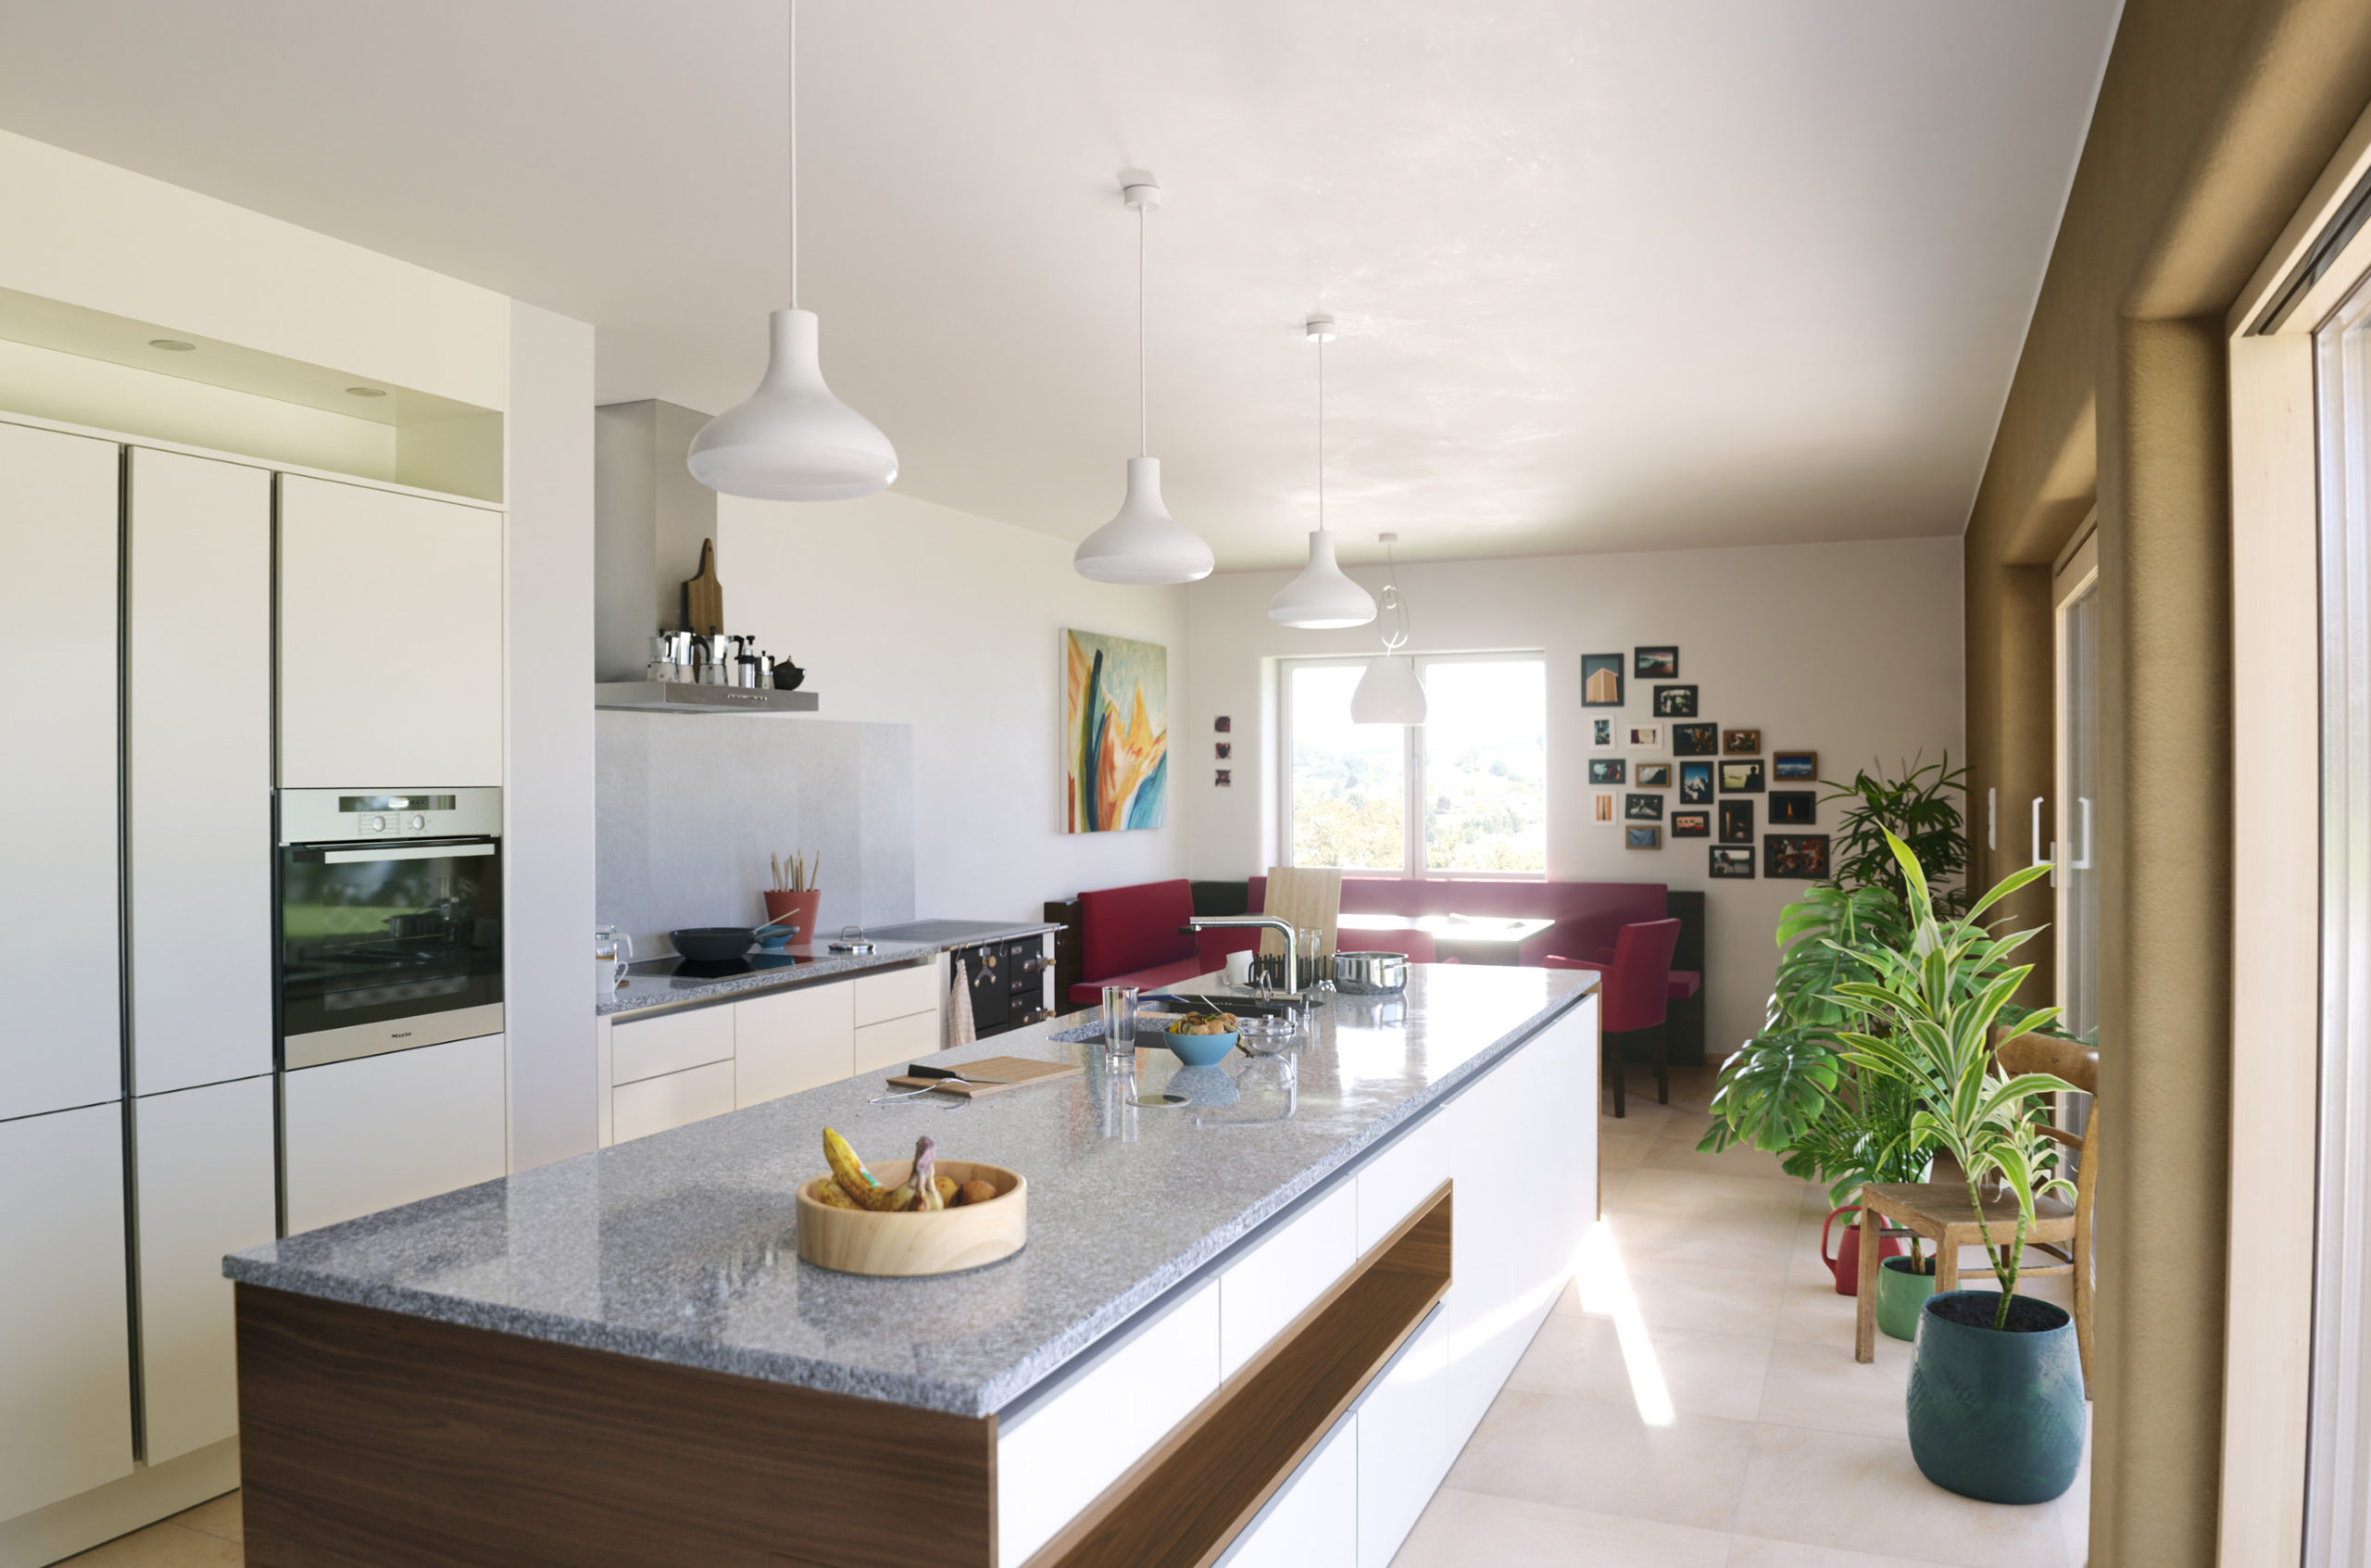 3D Render Küche Interior Eder Stefan  Kitchen